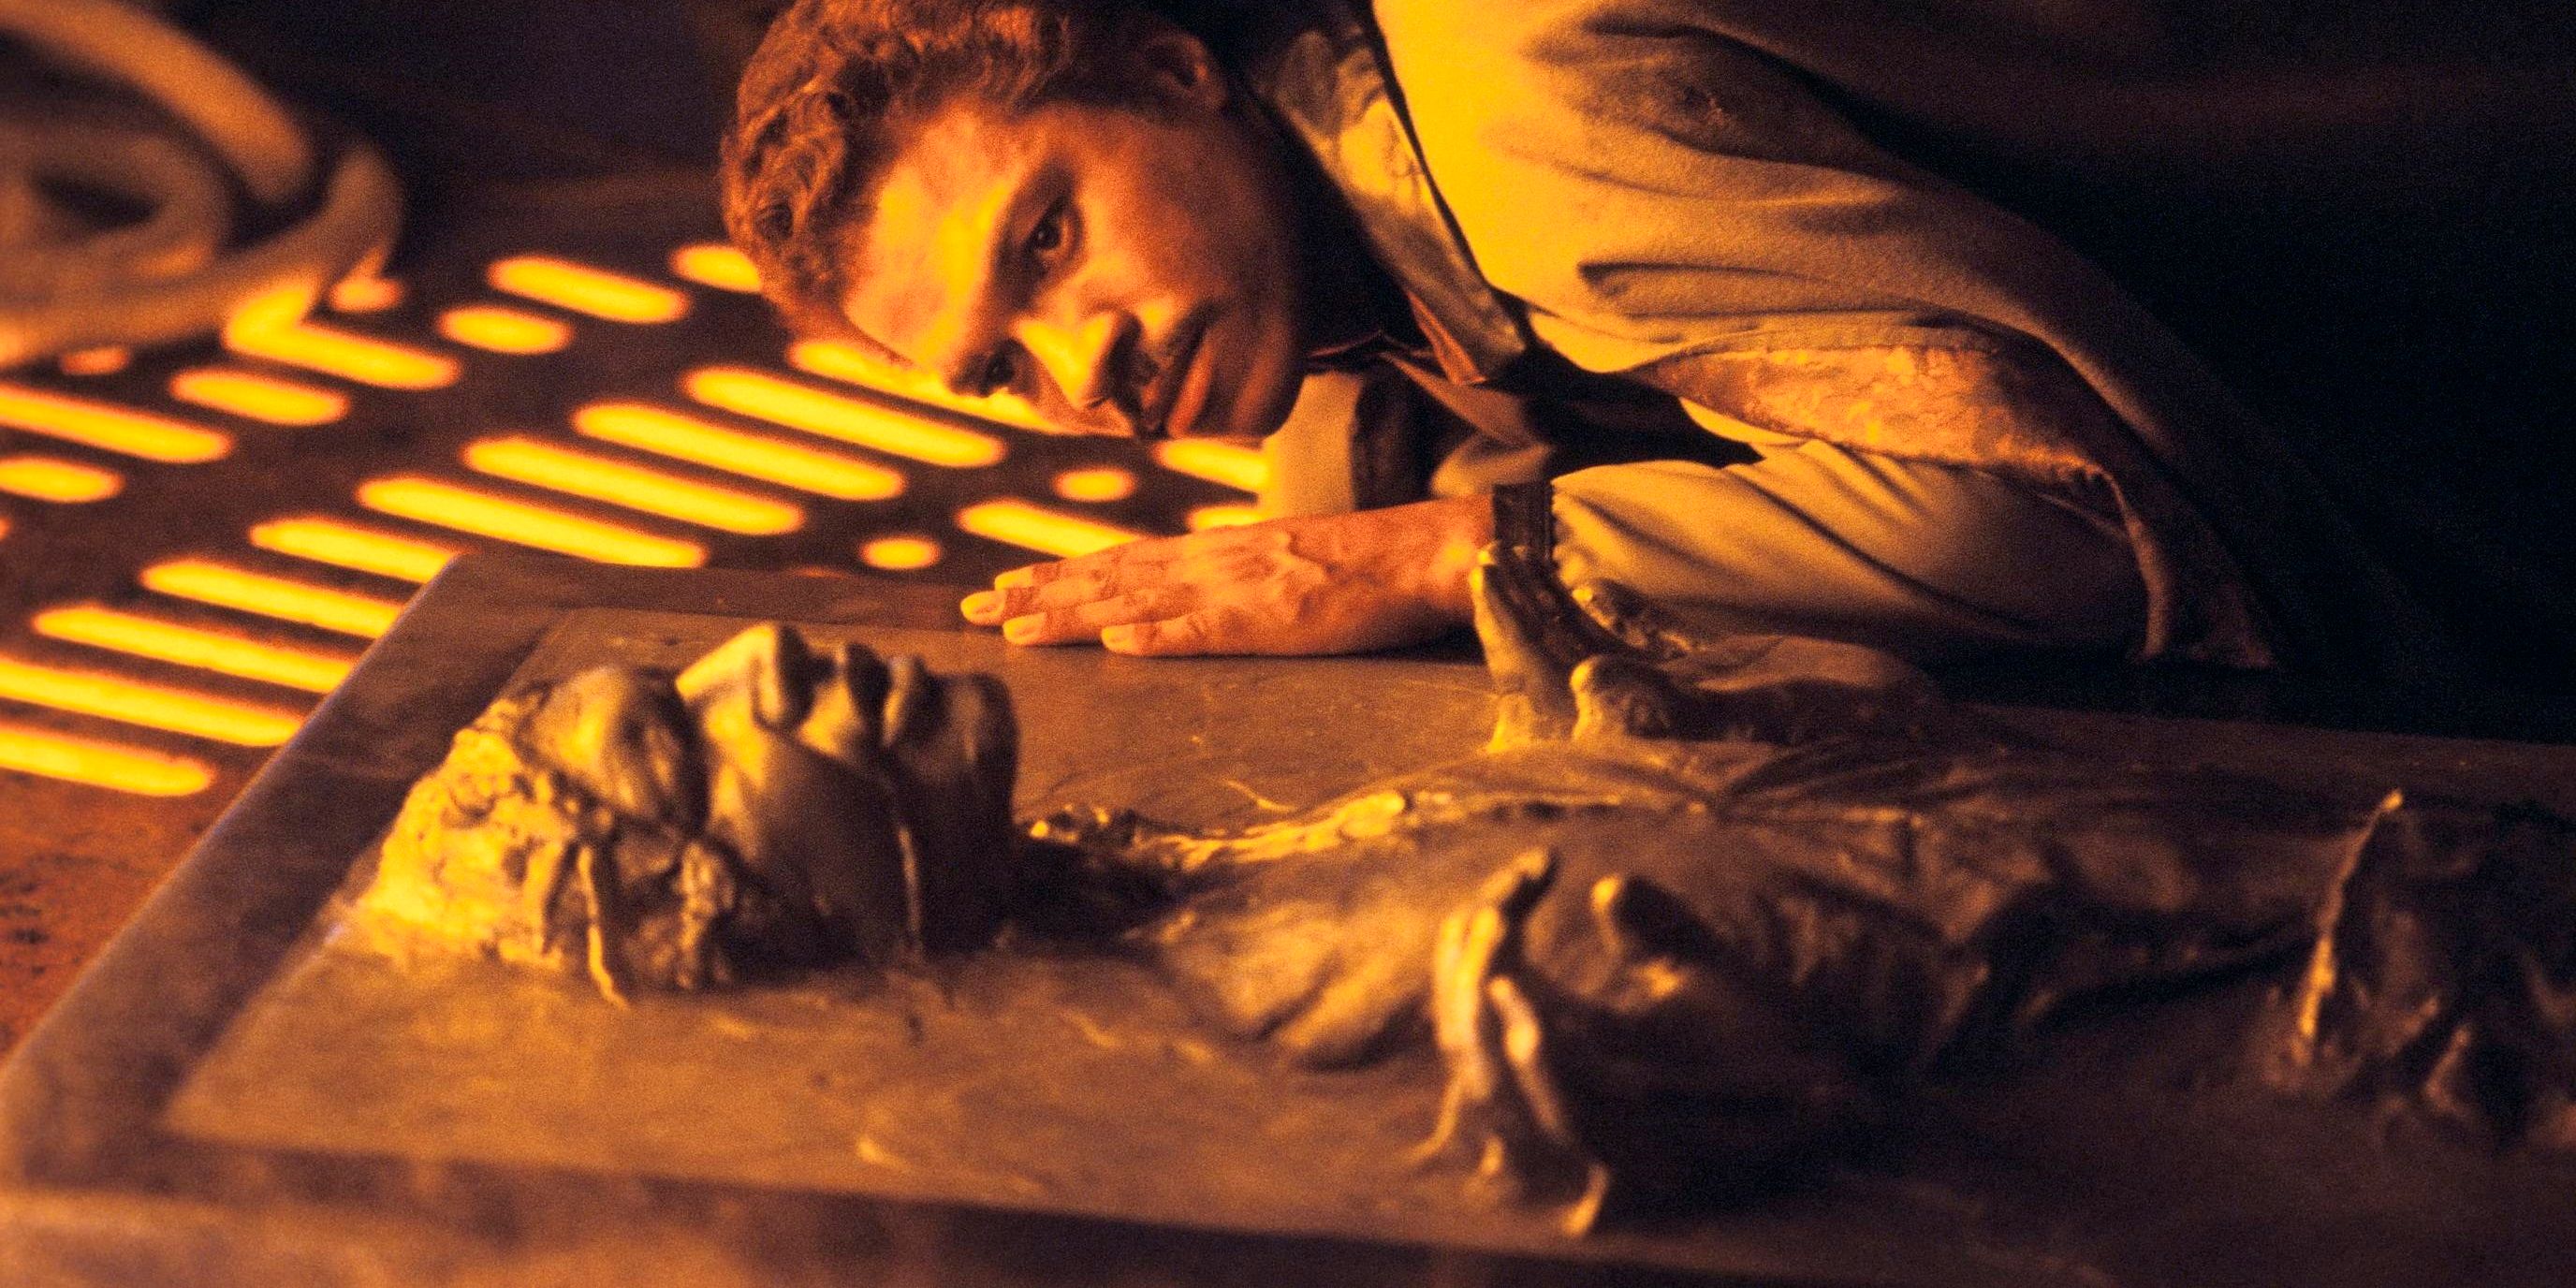 Lando Calrissian comprobando que Han Solo está vivo después de ser congelado en carbonita en Star Wars The Empire Strikes Back